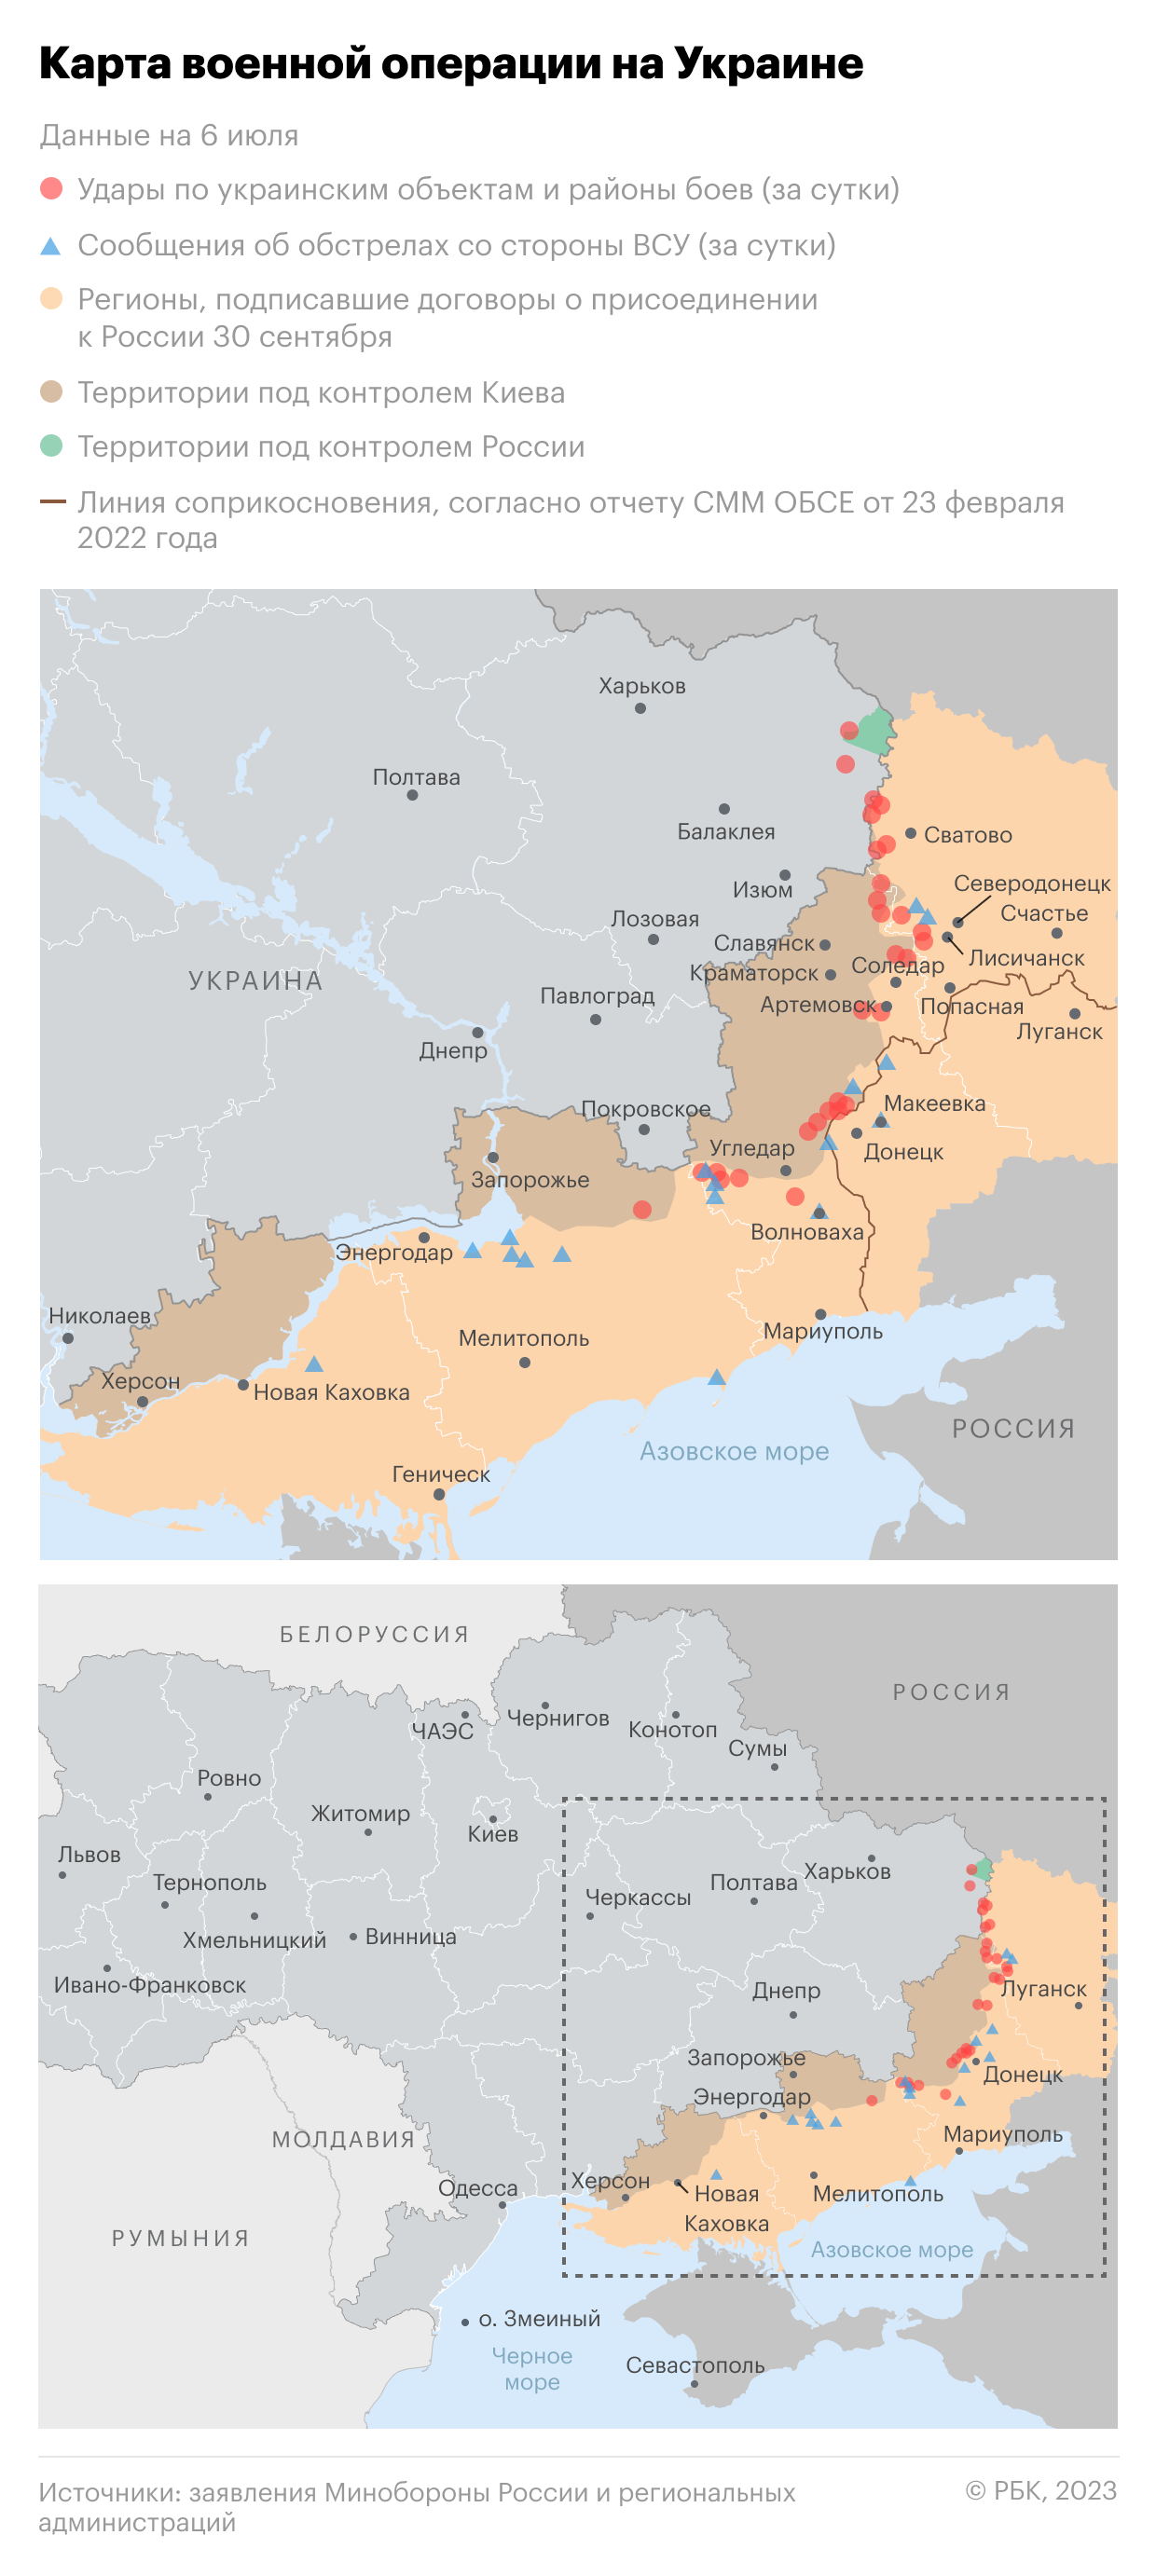 Военная операция на Украине. Карта на 6 июля"/>













